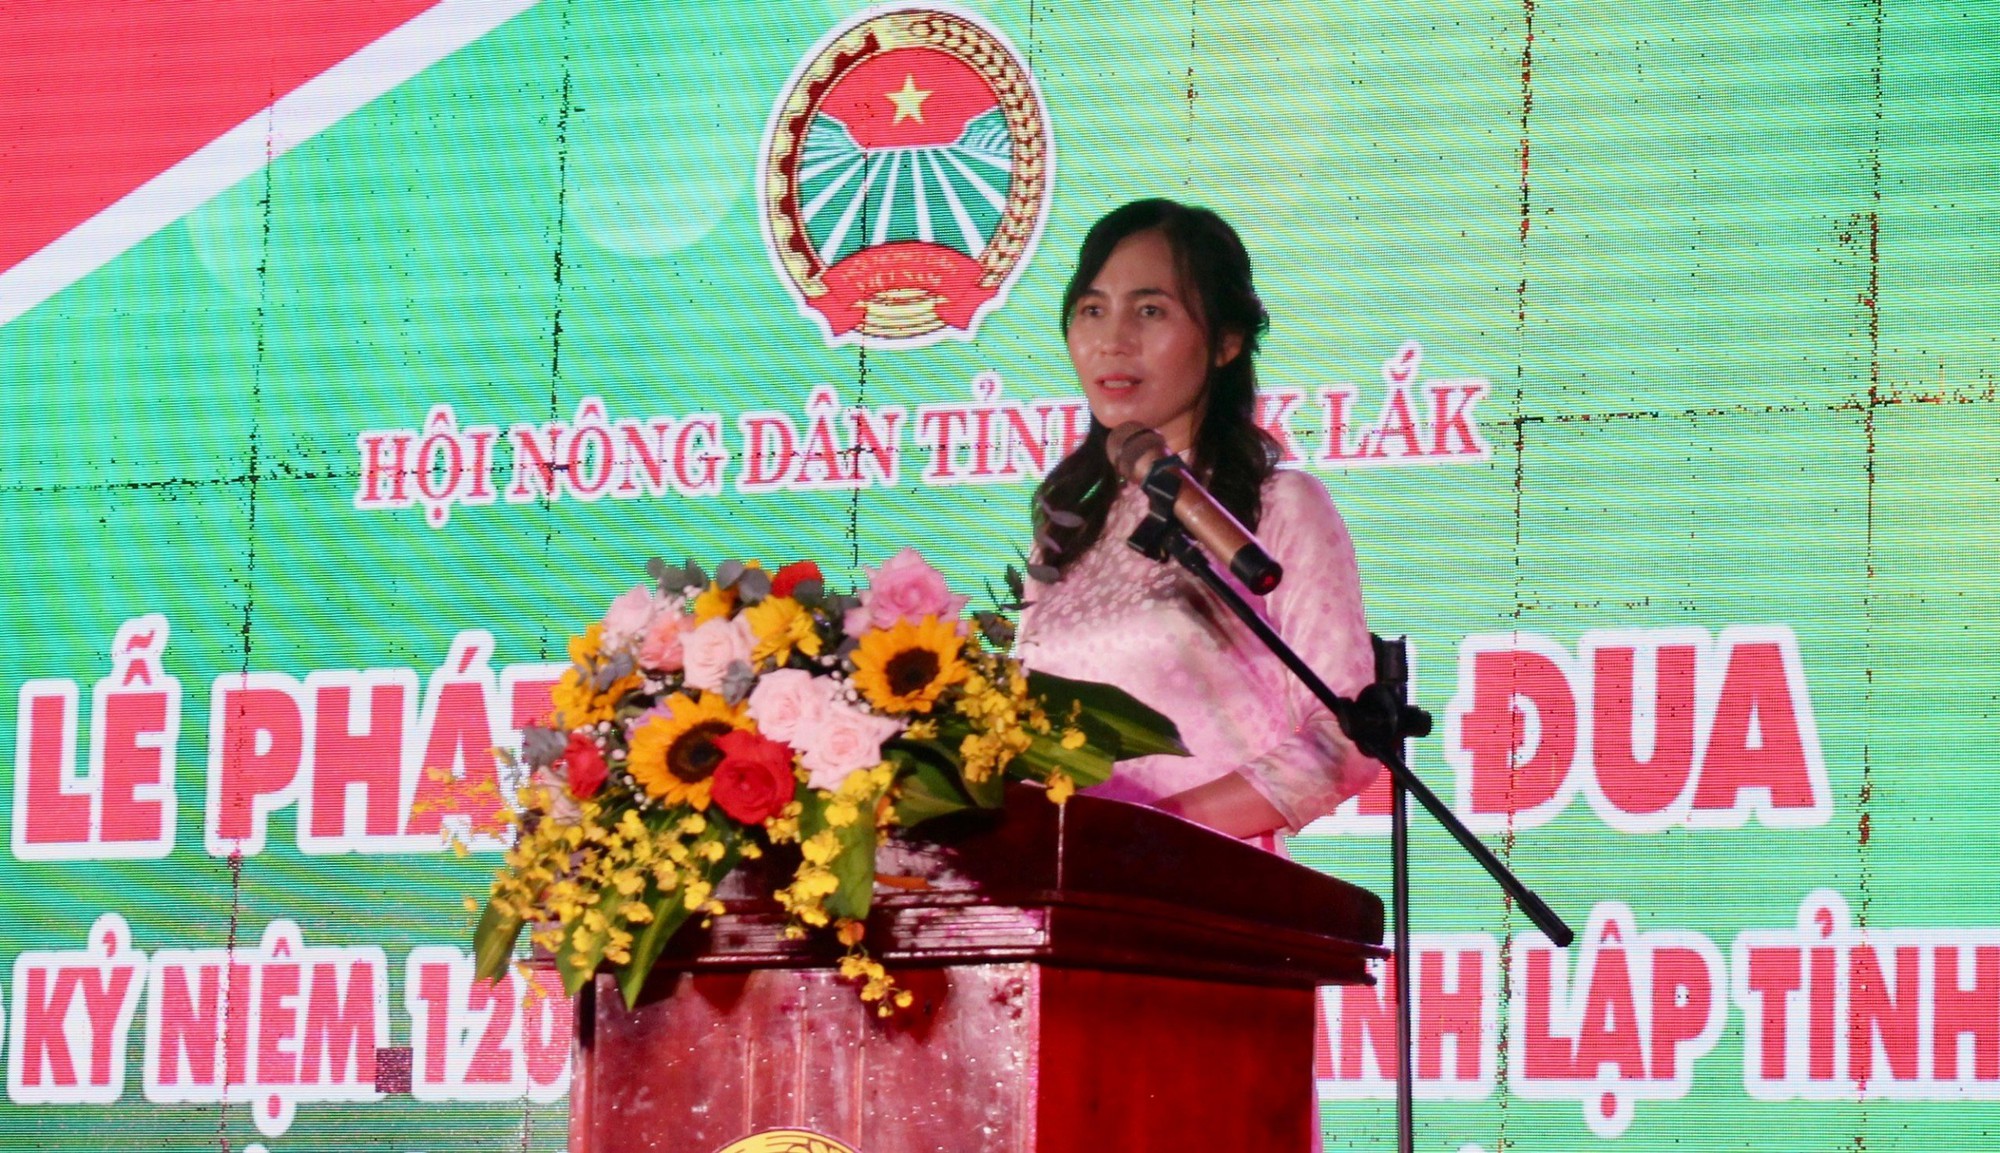 Nông dân Đắk Lắk tổ chức chuỗi sự kiện sôi nổi Kỷ niệm 120 năm Ngày thành lập tỉnh - Ảnh 1.